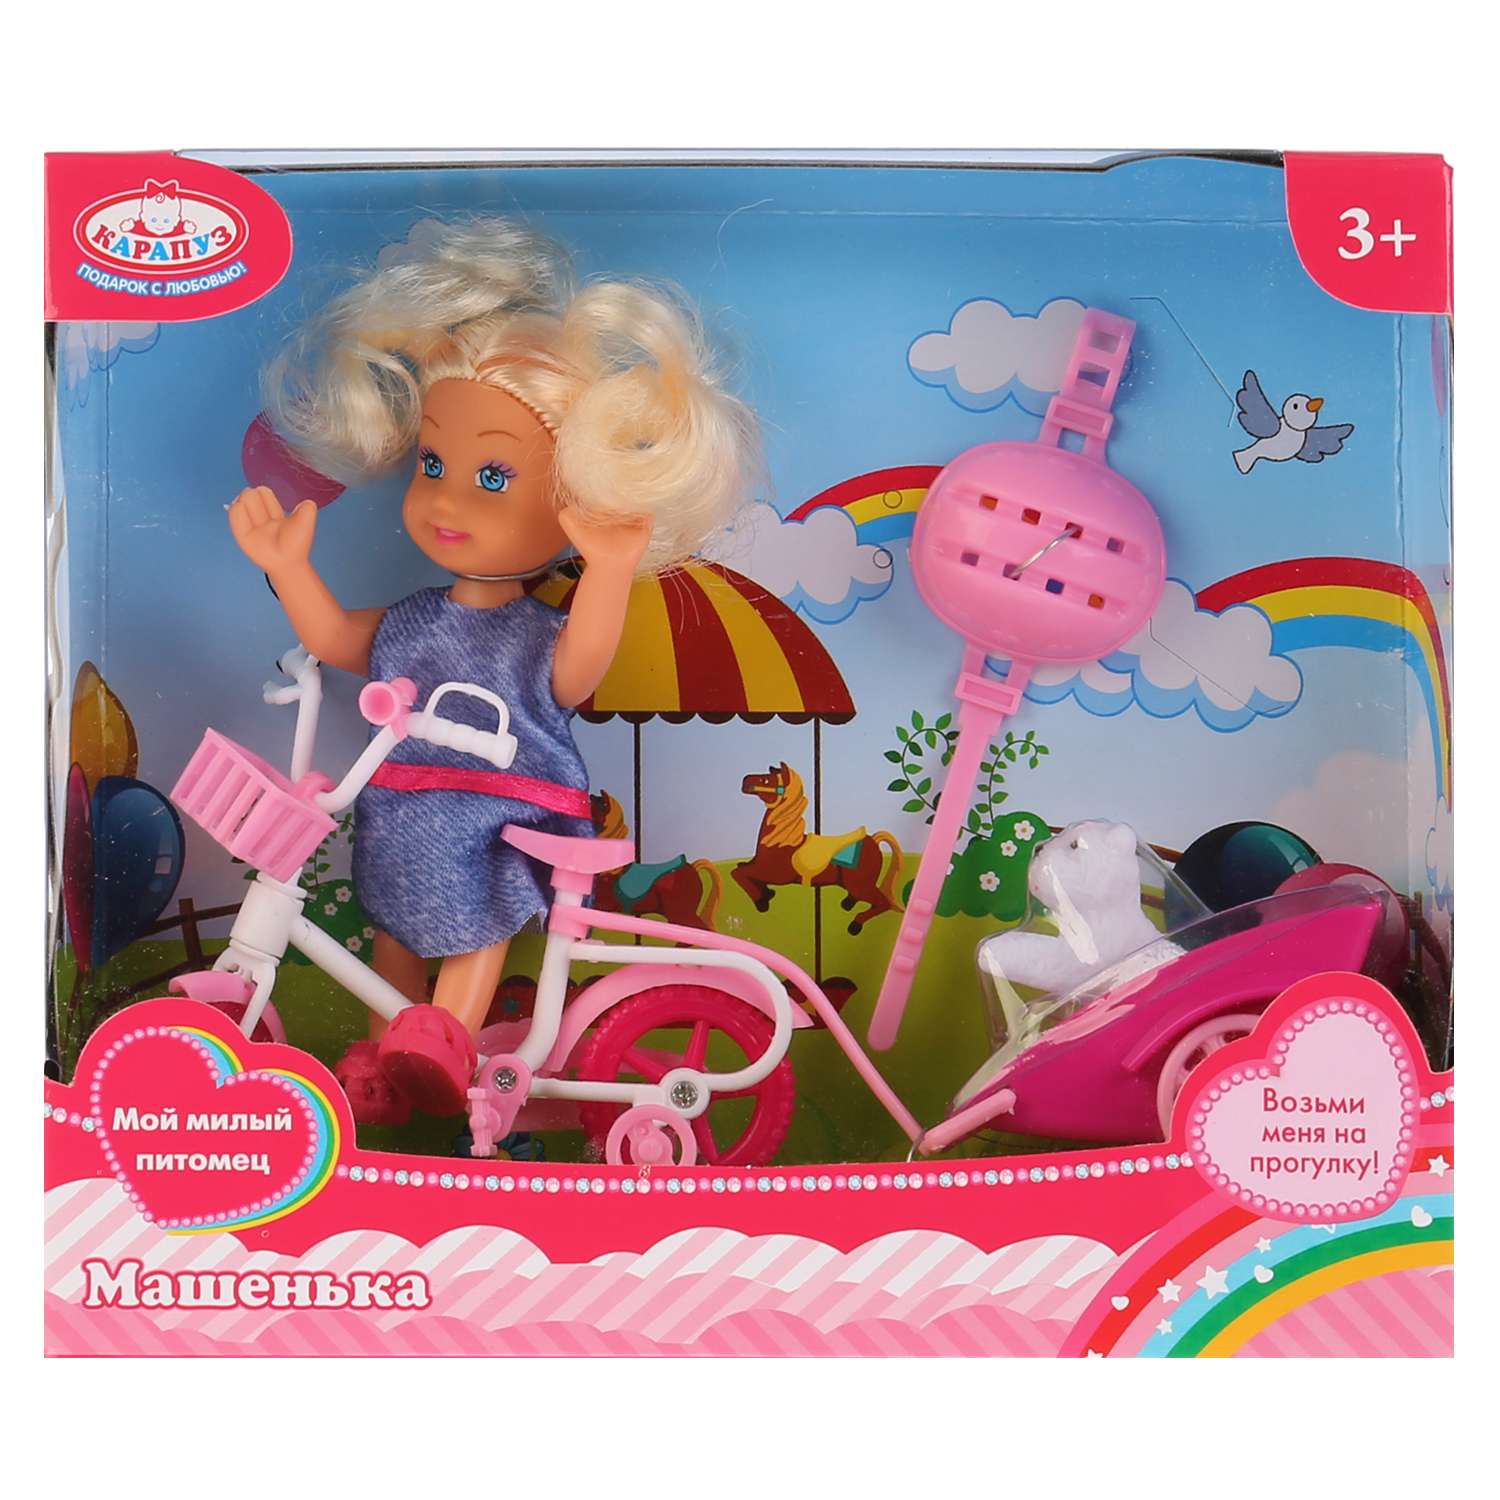 Кукла Карапуз Машенька 12см в наборе велосипед с прицепом питомец 263717 263717 - фото 2